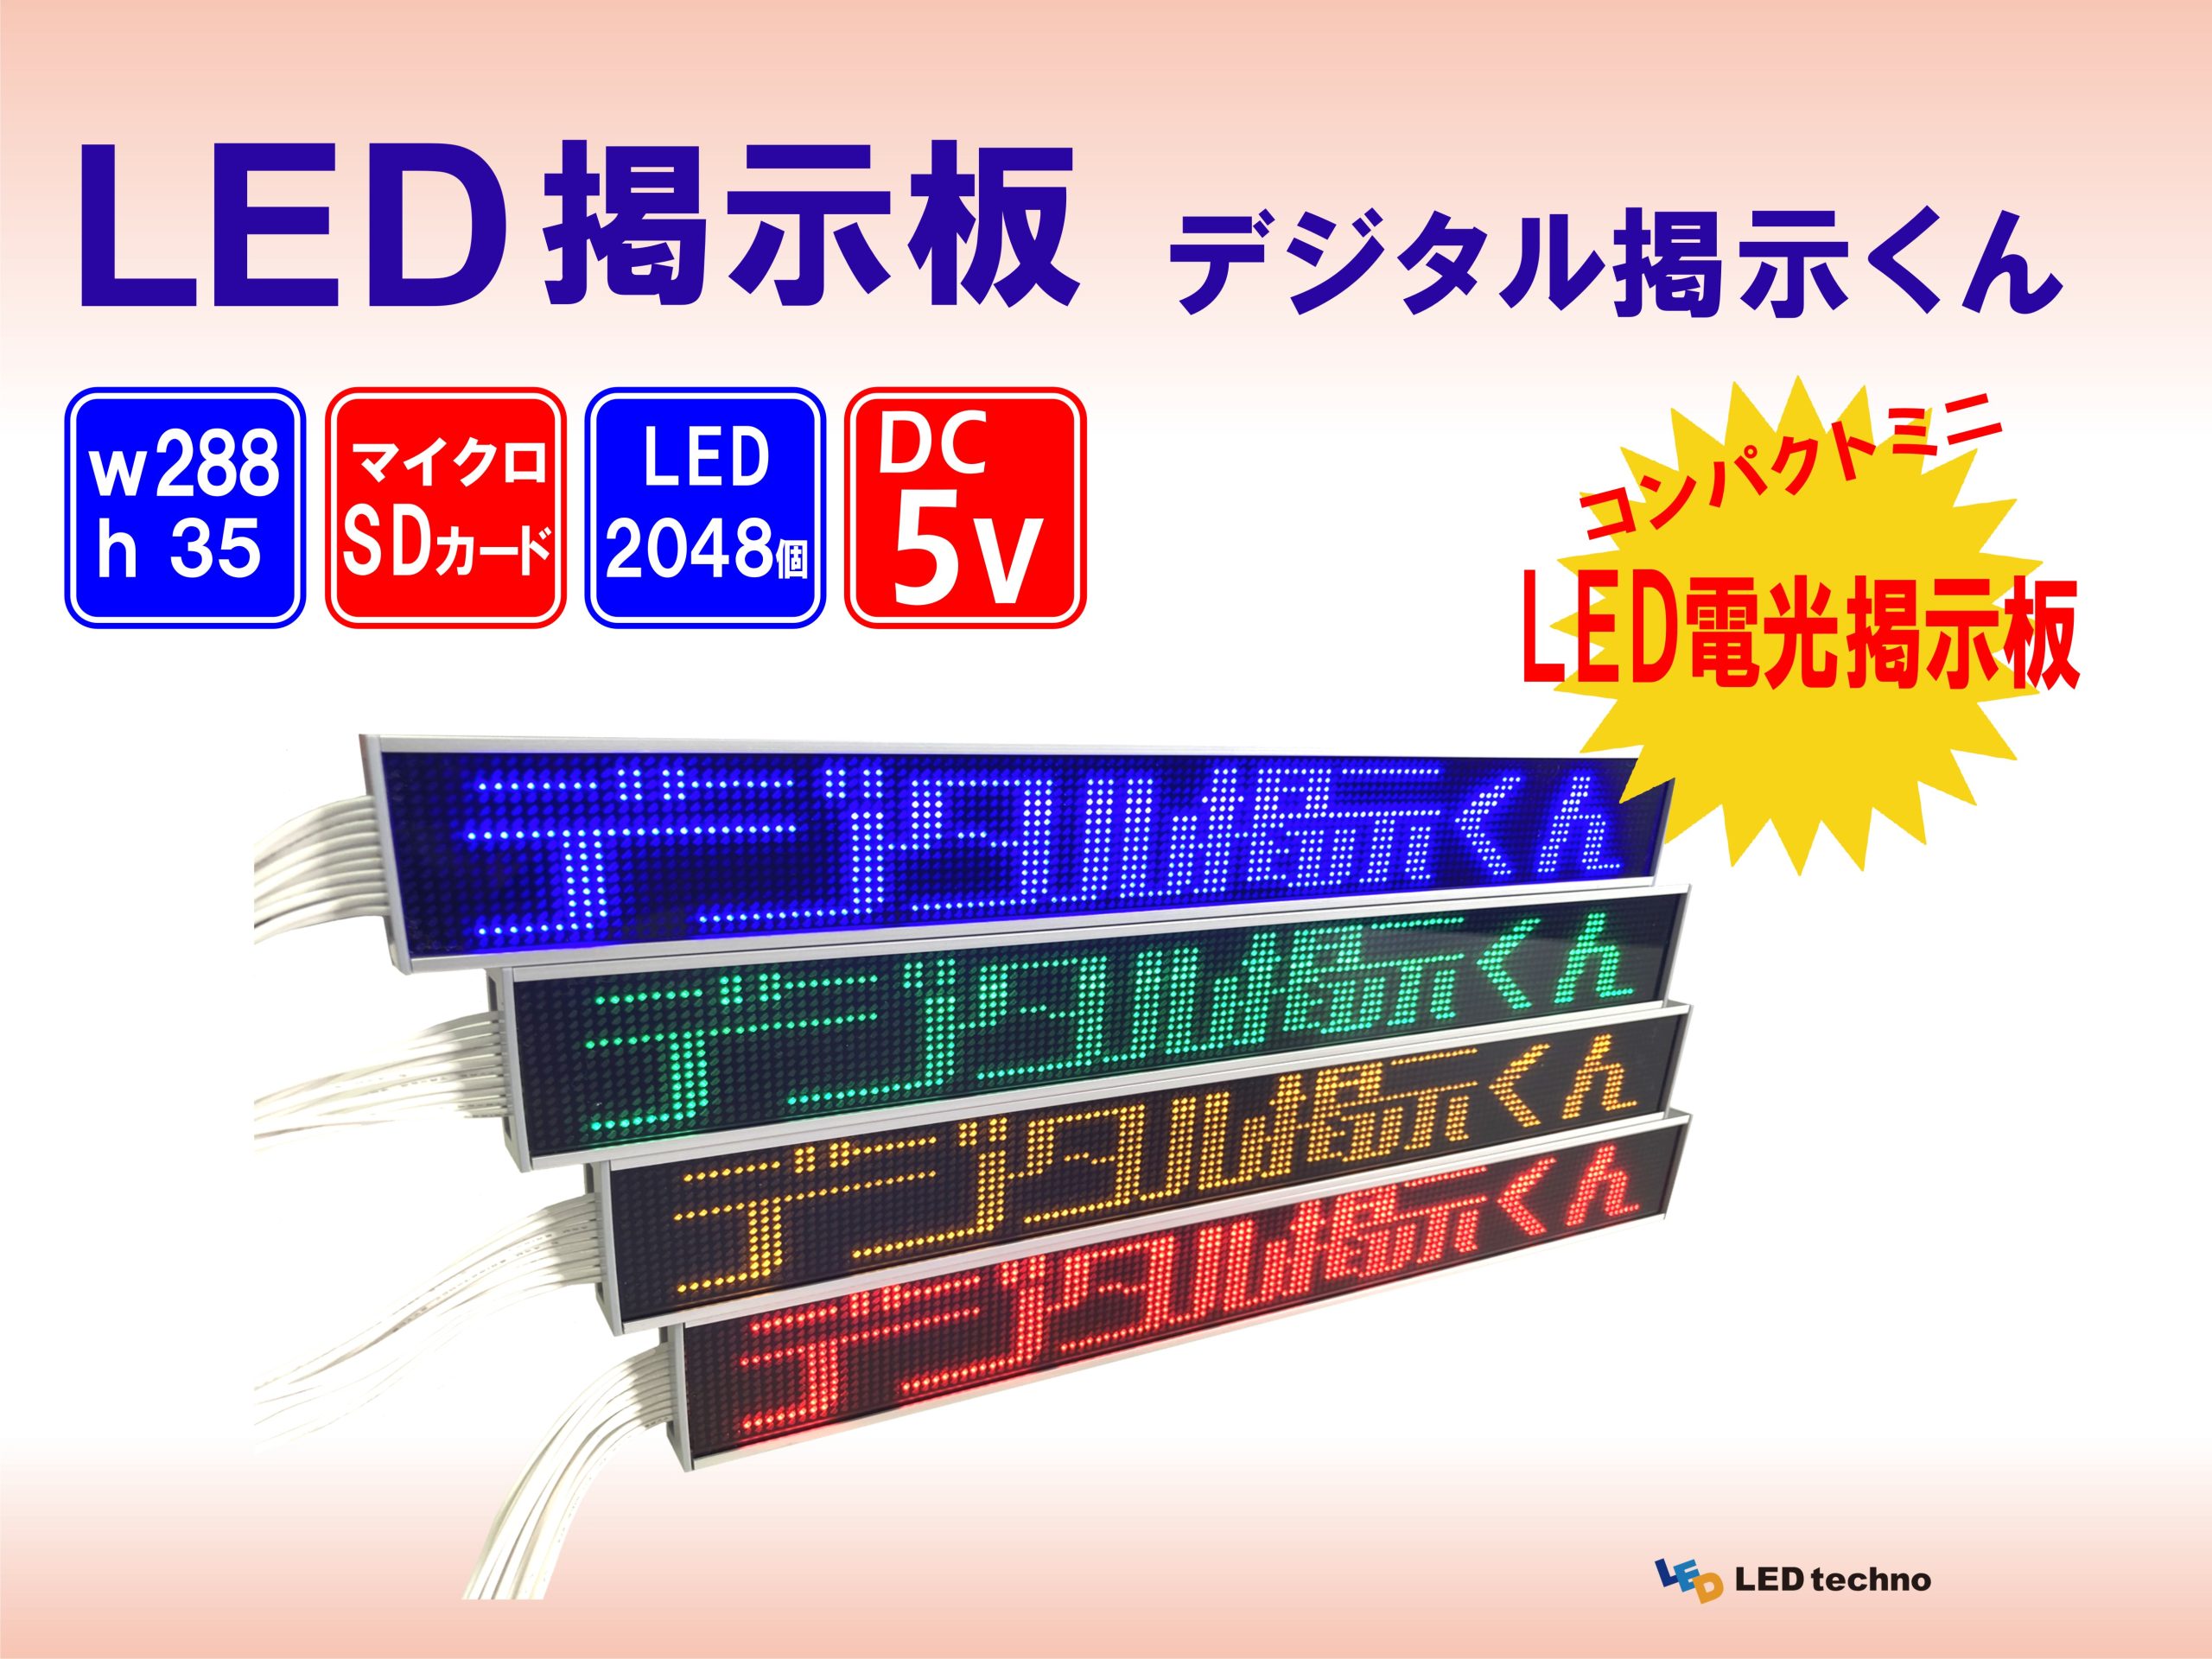 デジタル掲示くん - LEDテクノ株式会社